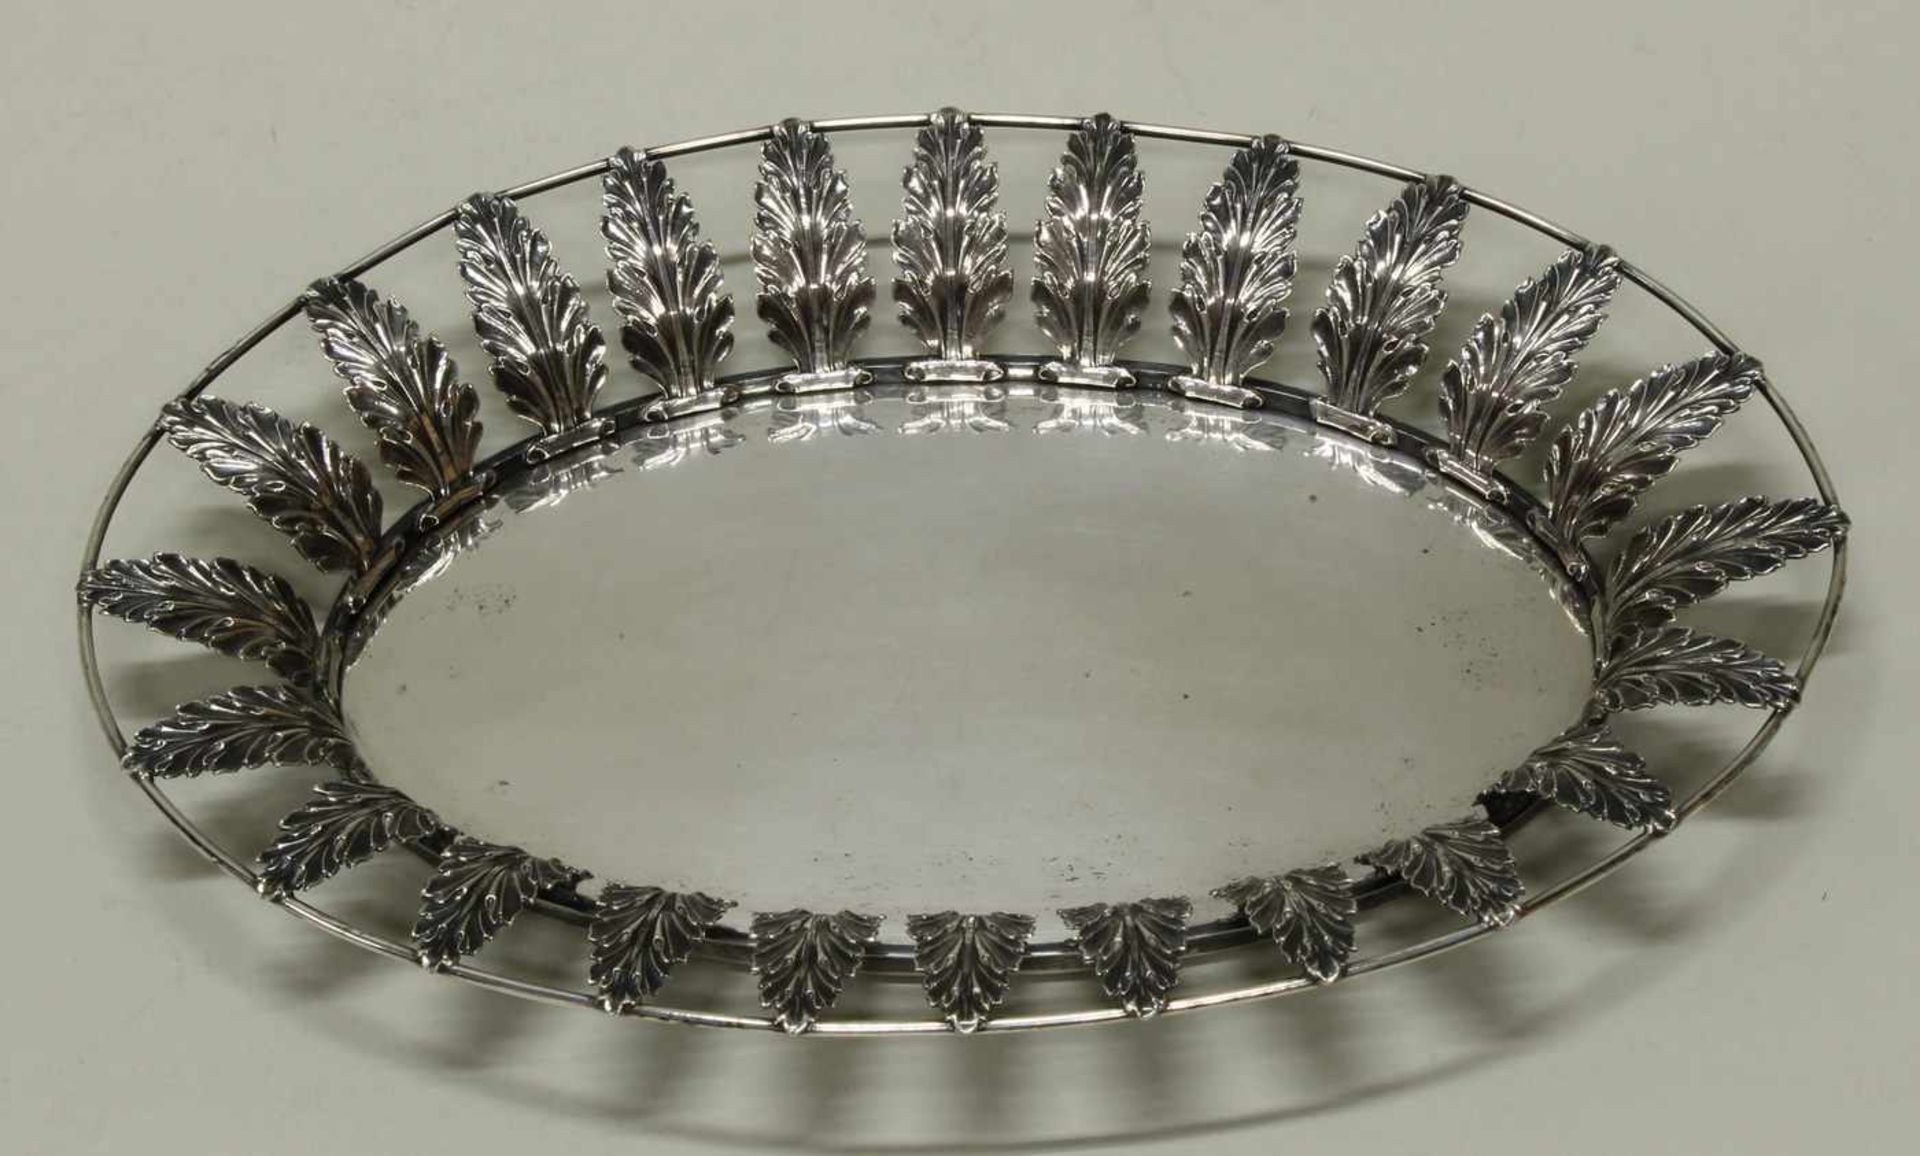 Korb, Silber, Danzig, um 1820, Carl Benjamin Schultz, oval, glatter Spiegel, durchbrochen - Bild 2 aus 4